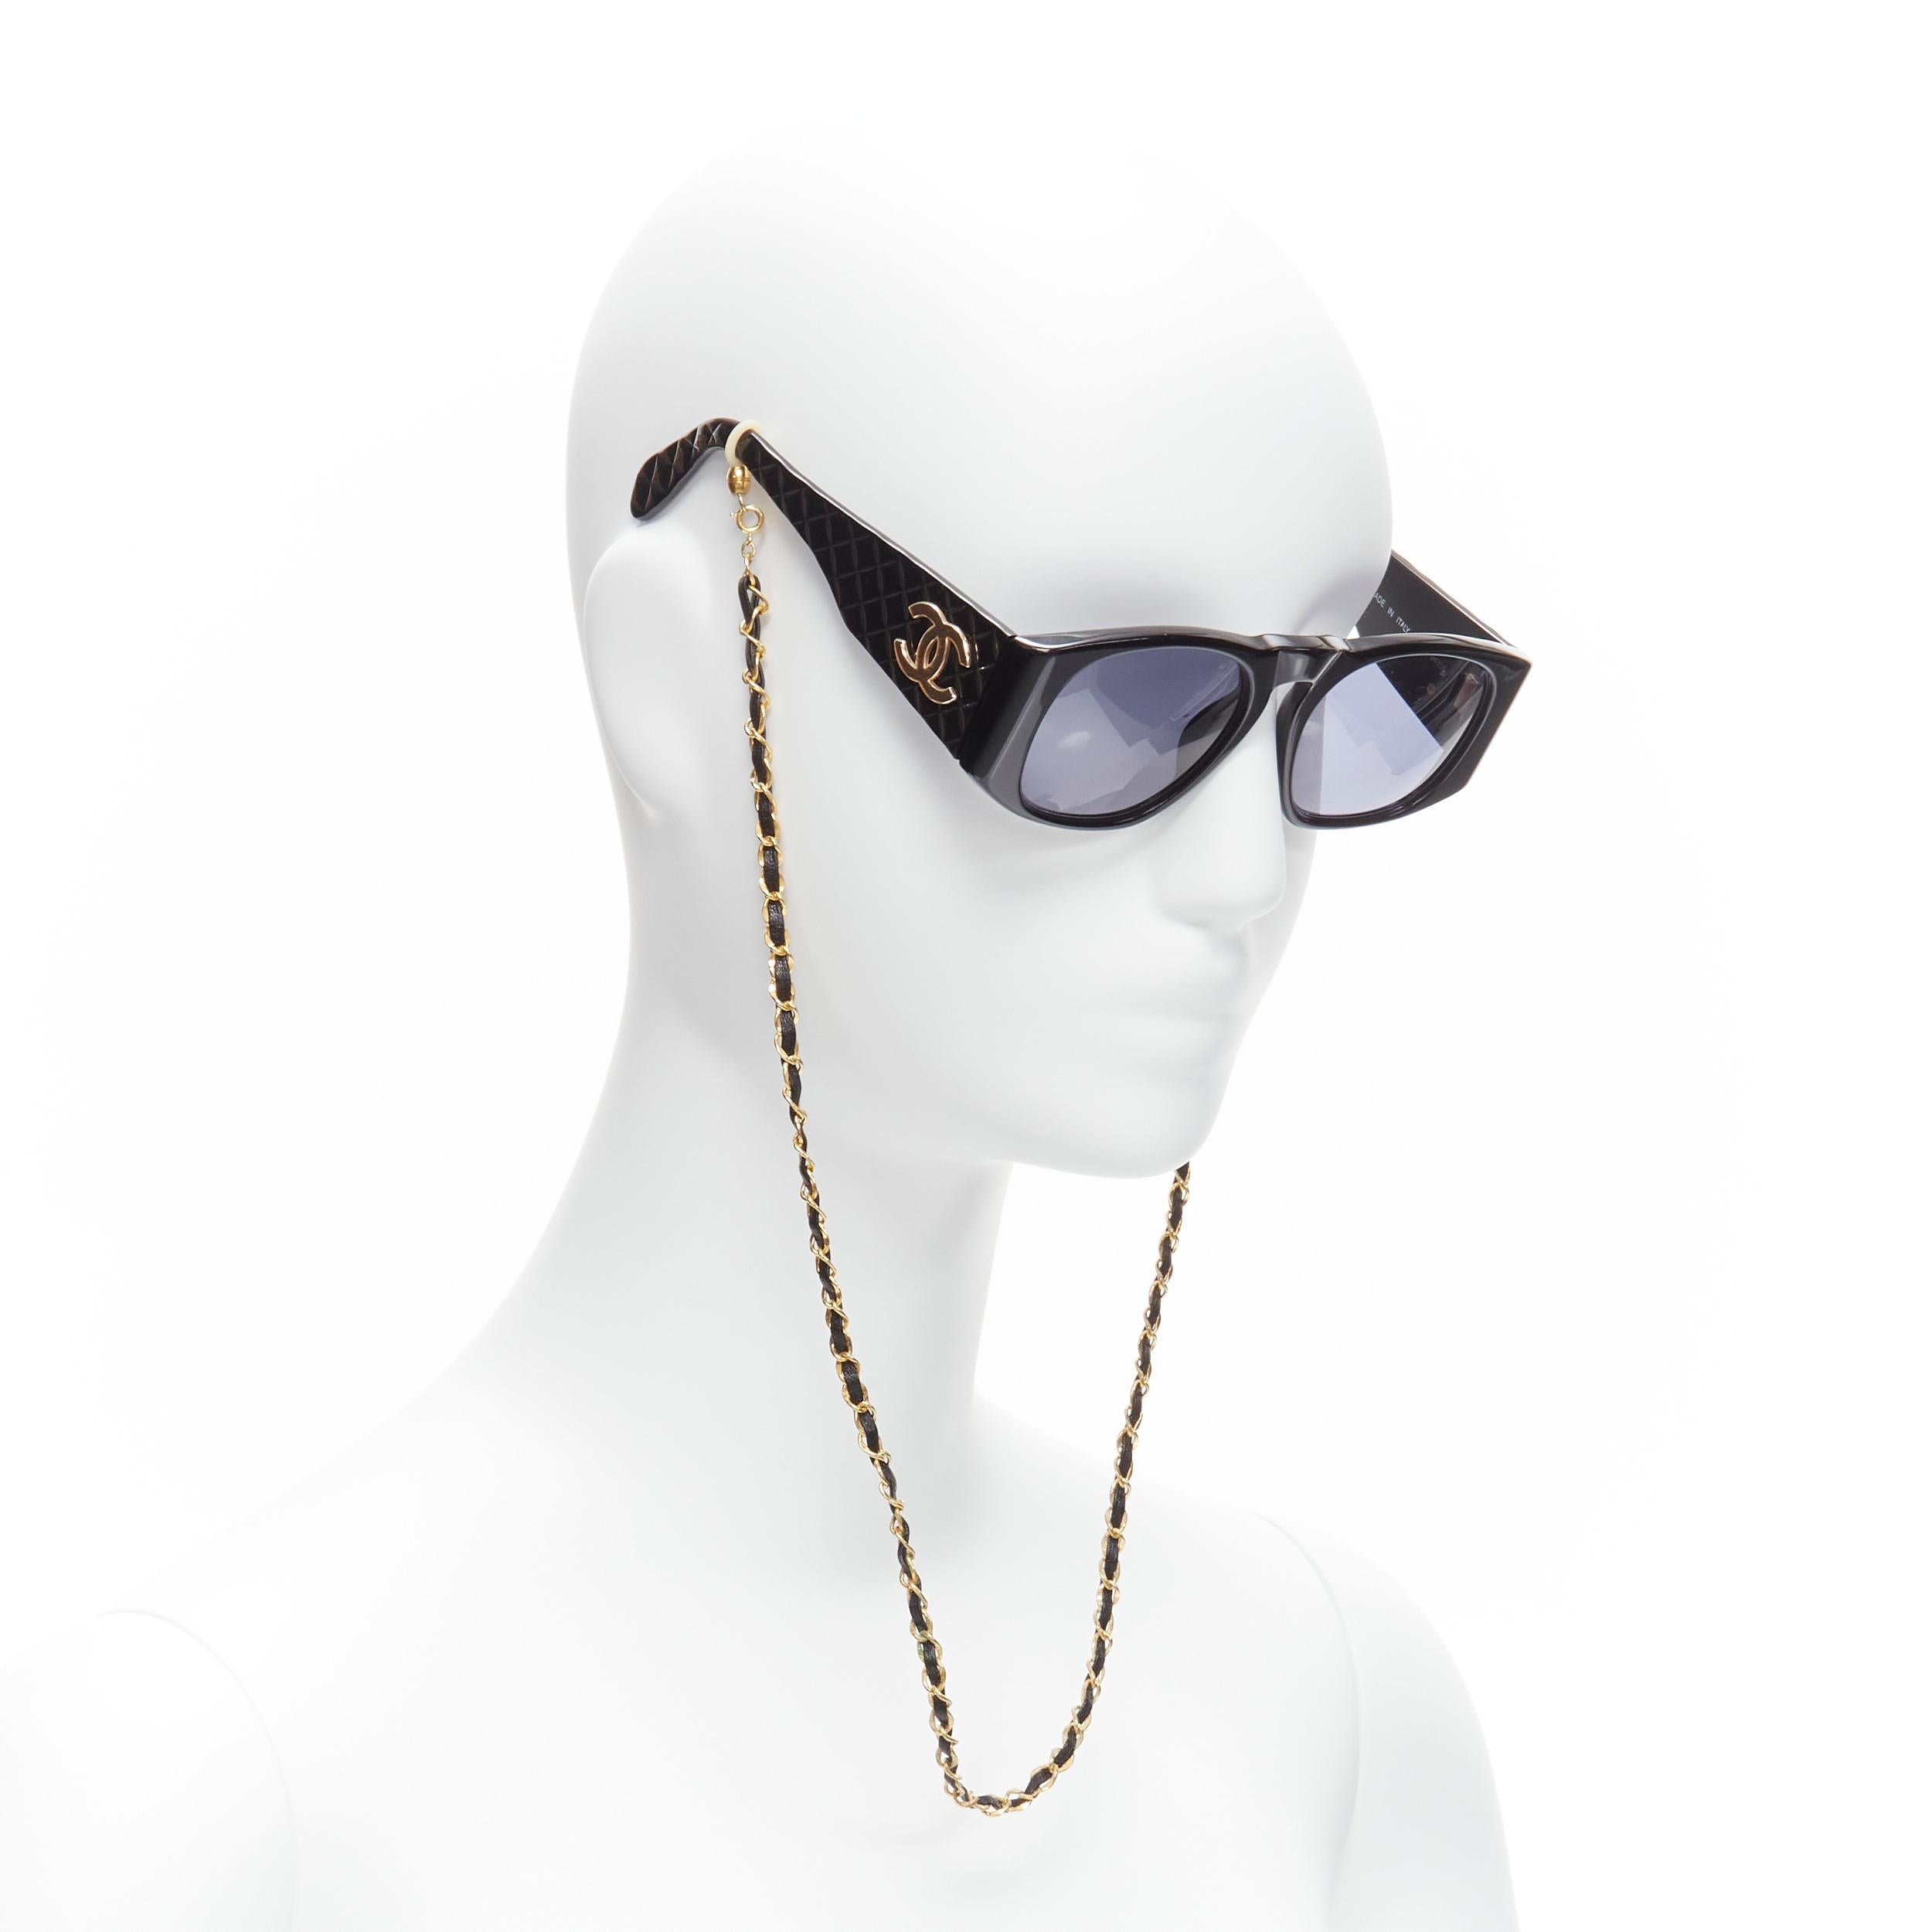 CHANEL 01450 CC schwarze, glänzende Sonnenbrille mit goldenem Logo und gestepptem Rahmen
Referenz: TGAS/C02036
Marke: Chanel
Designer: Karl Lagerfeld
Modell: 01450 94305
MATERIAL: Acryl, Metall
Farbe: Schwarz, Gold
Muster: Solide
Zusätzliche